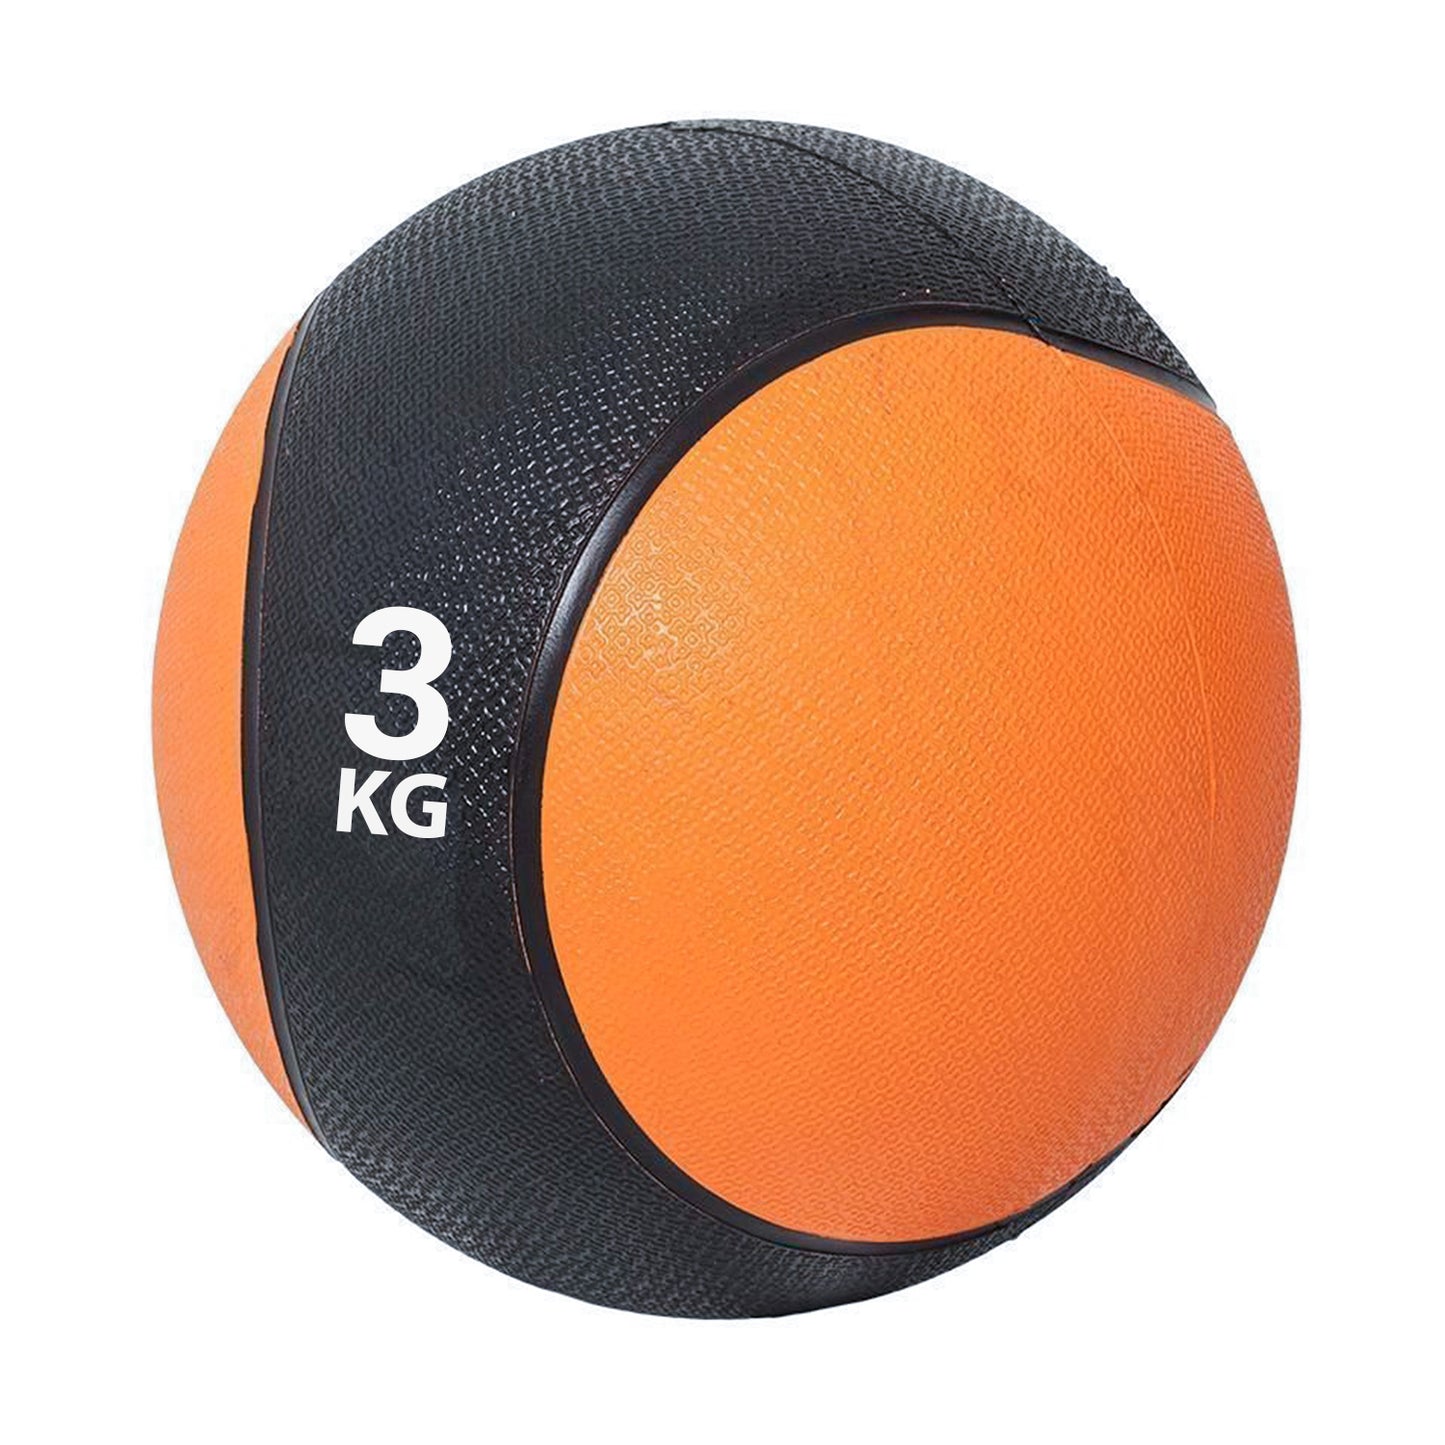 كرة طبية من المطاط لاعادة التأهيل و اللياقة البدنية - لون اسود و برتقالي - وزن 3 كيلو جرام - Kanteen - كانتين